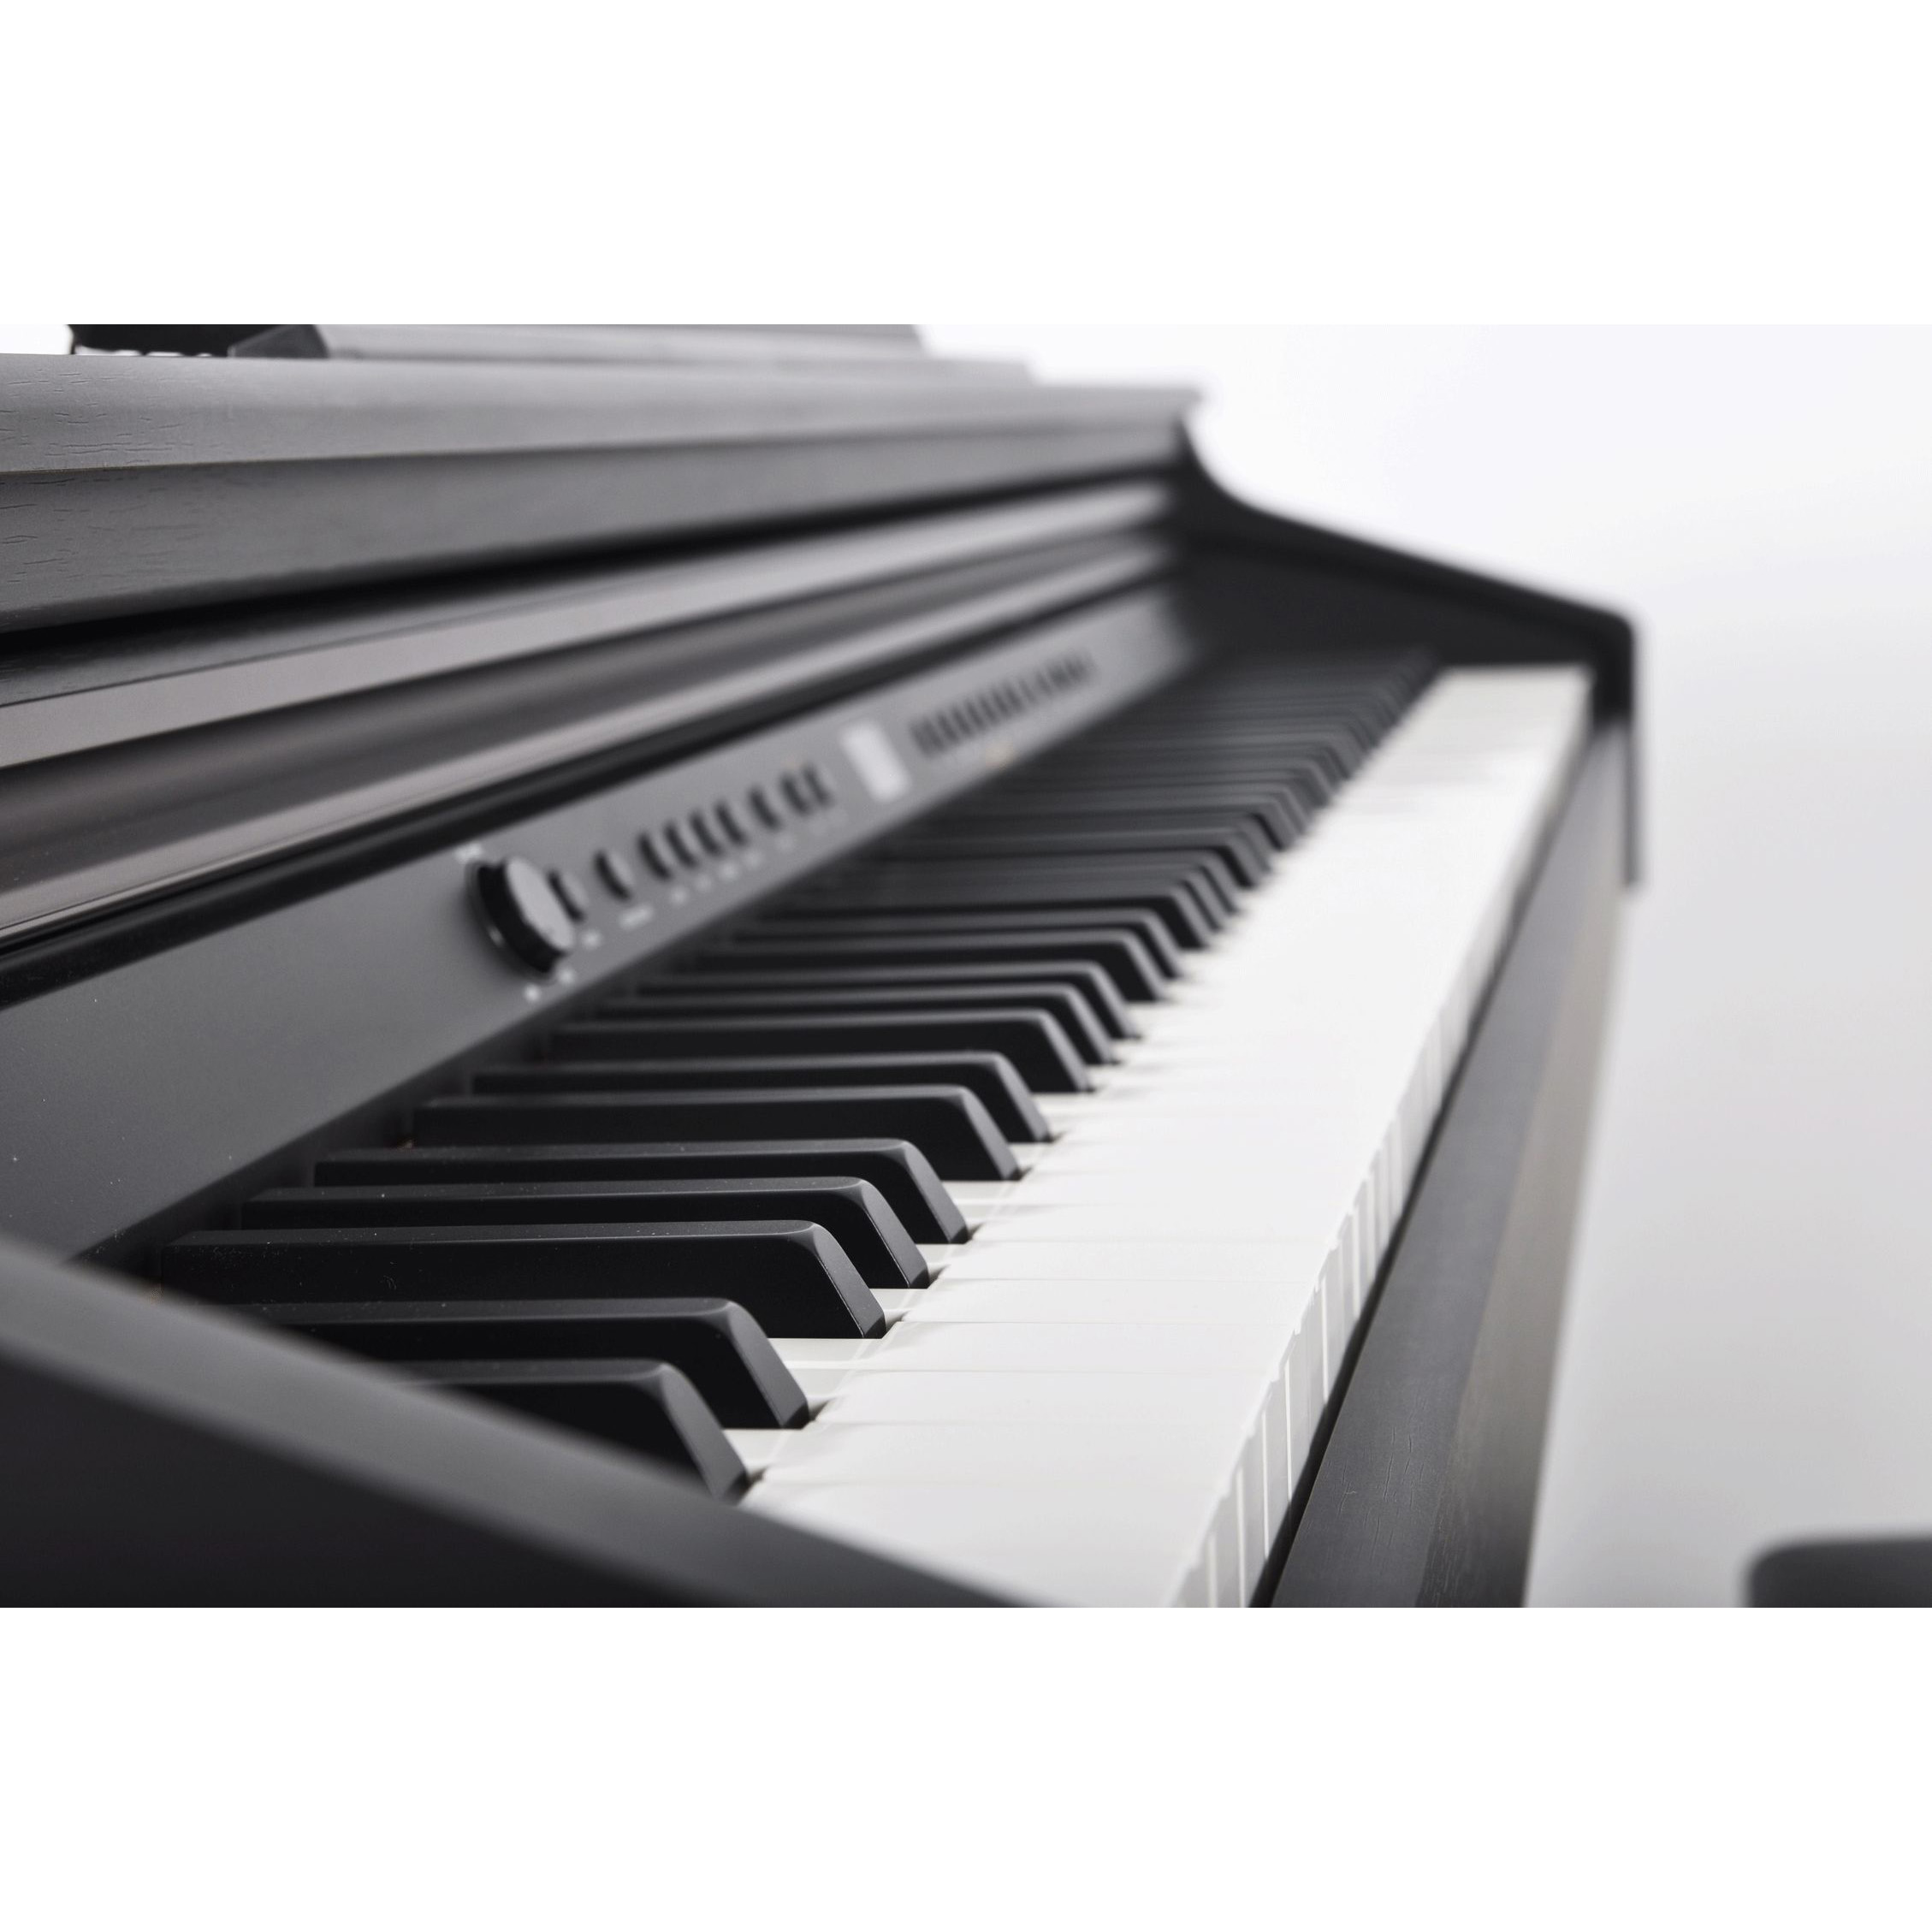 Artesia DP-3 Satin Белый Цифровые пианино